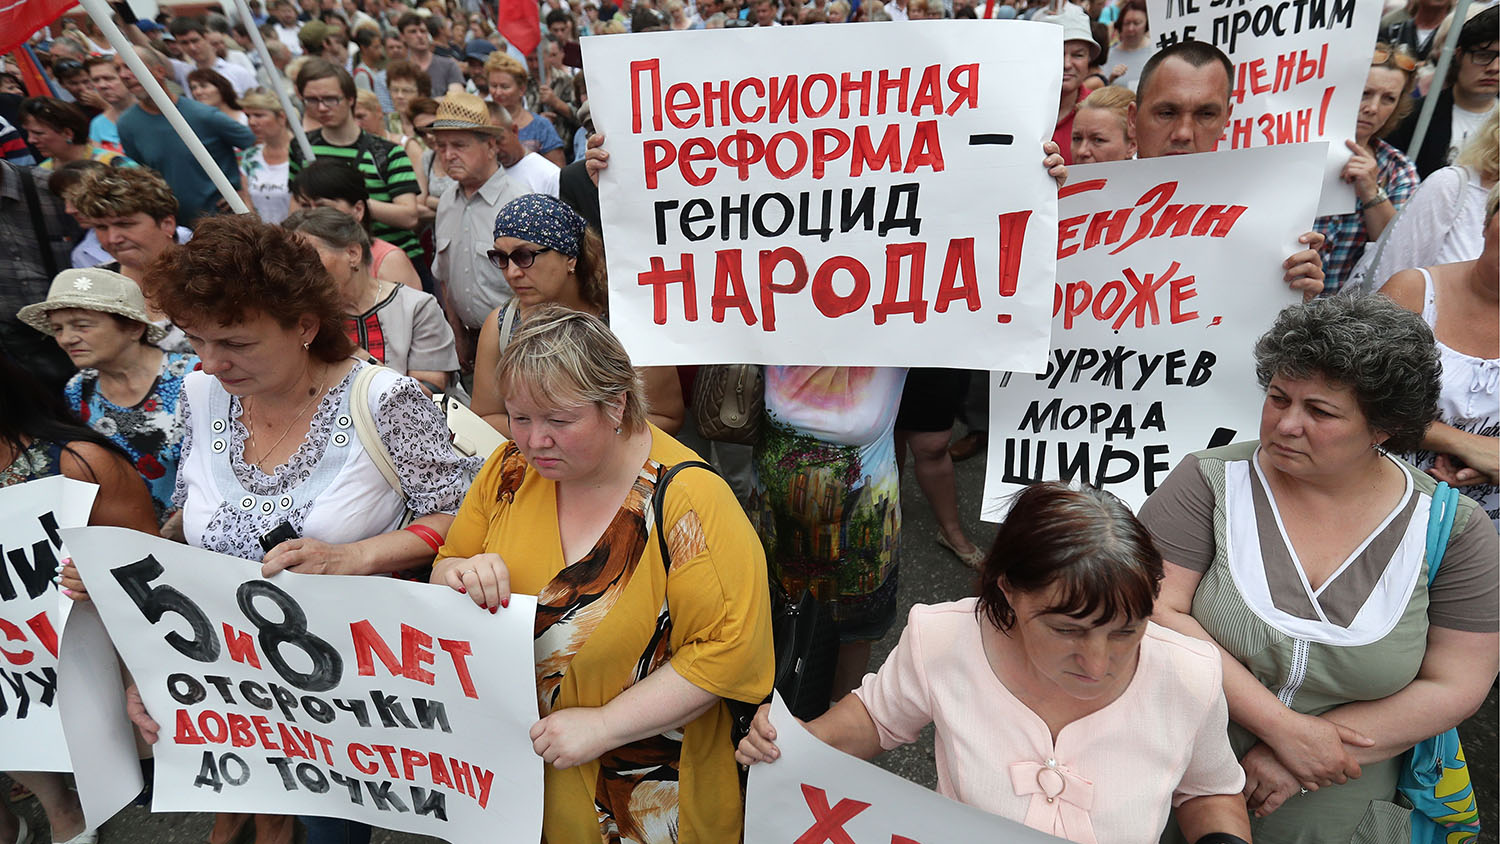 Граждане протестуют, но даже они не знают истинной цены "пенсионной реформы"